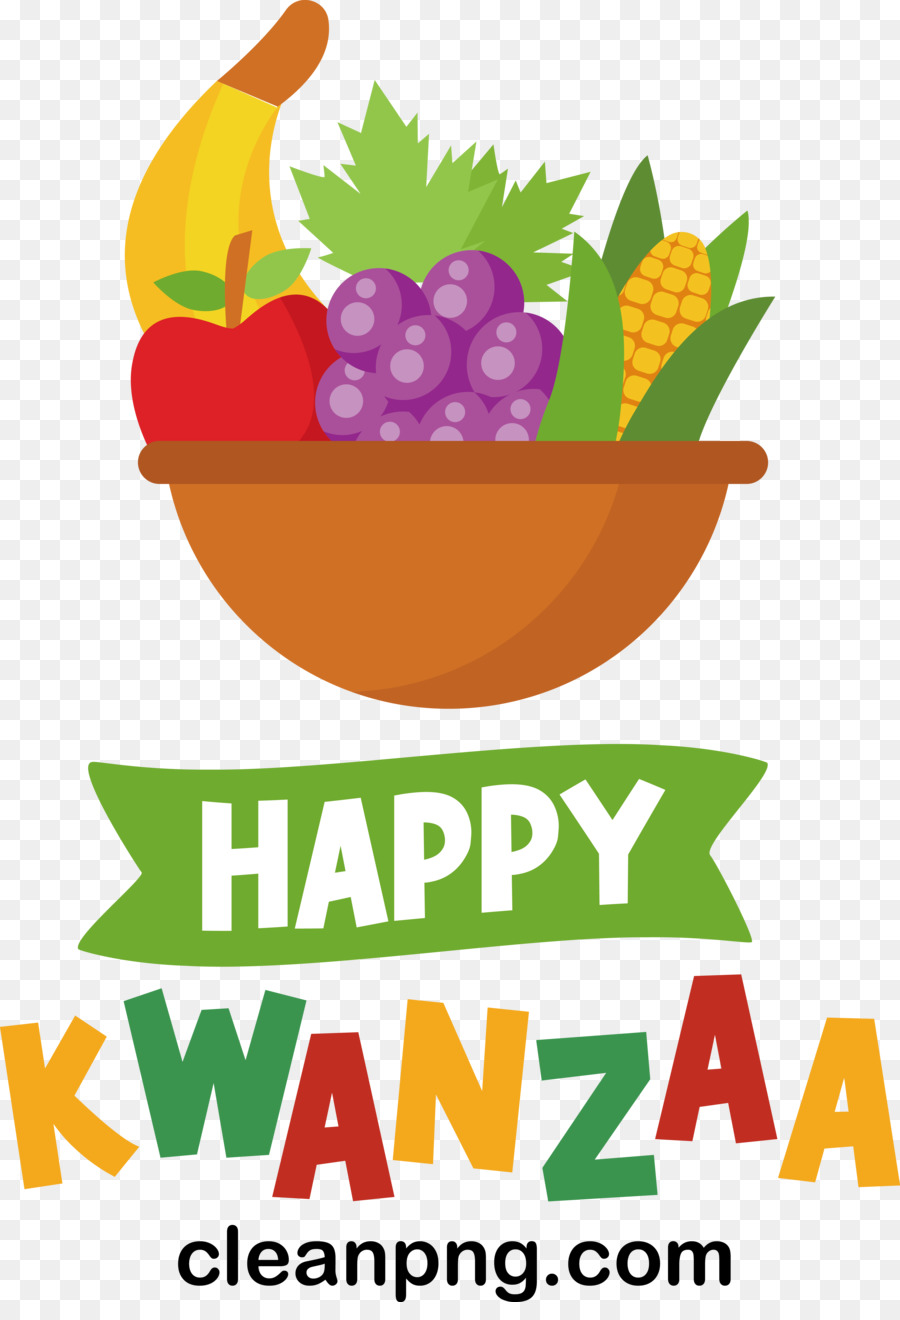 Happy Kwanzaa - 